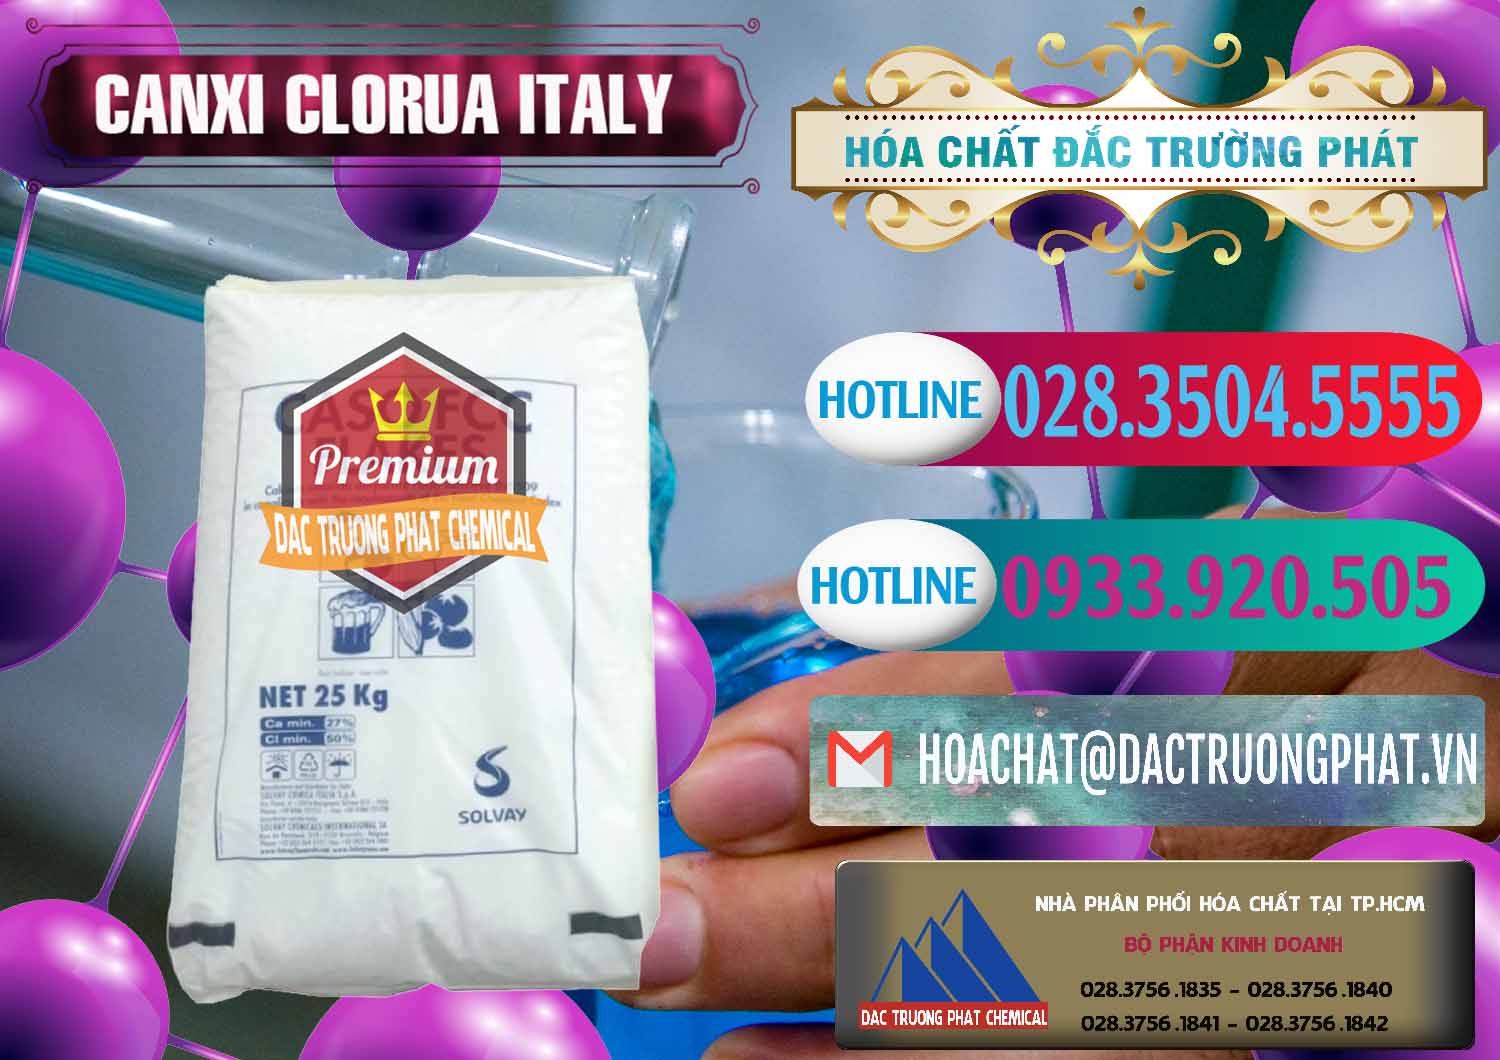 Cty chuyên bán - cung cấp CaCl2 – Canxi Clorua Food Grade Ý Italy - 0435 - Nhà phân phối & cung cấp hóa chất tại TP.HCM - truongphat.vn